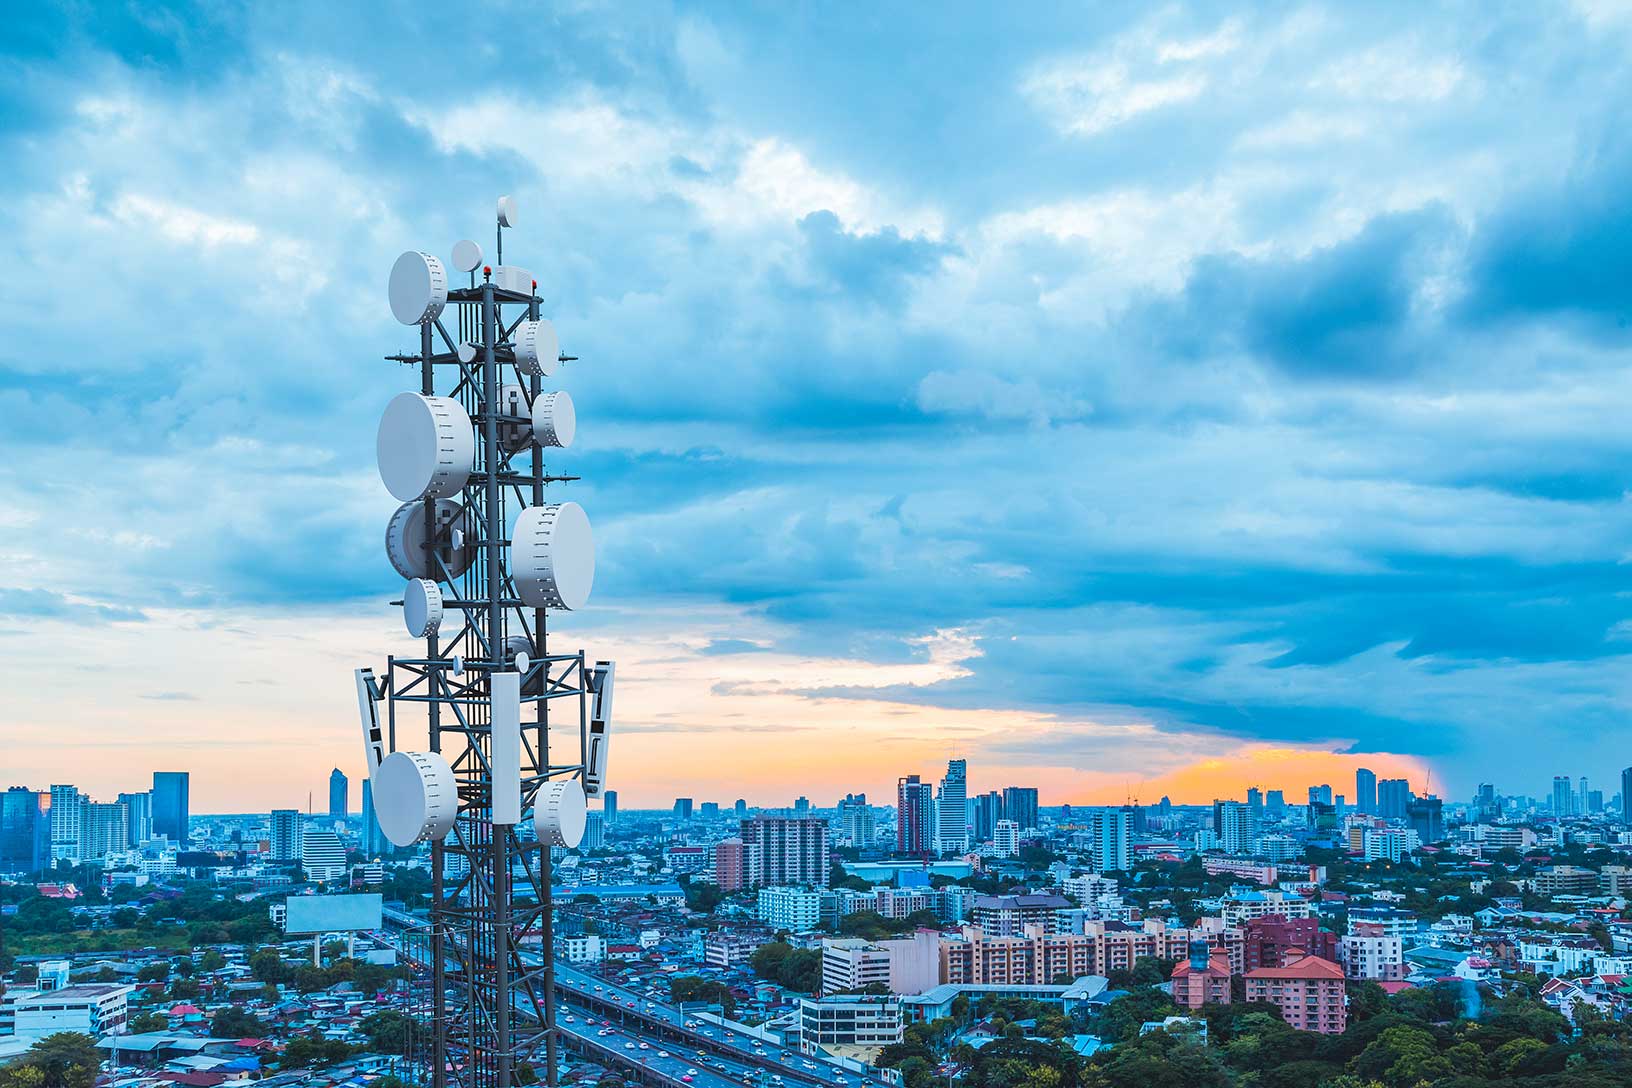 Torre de telecomunicaciones con una antena de red móvil 5G